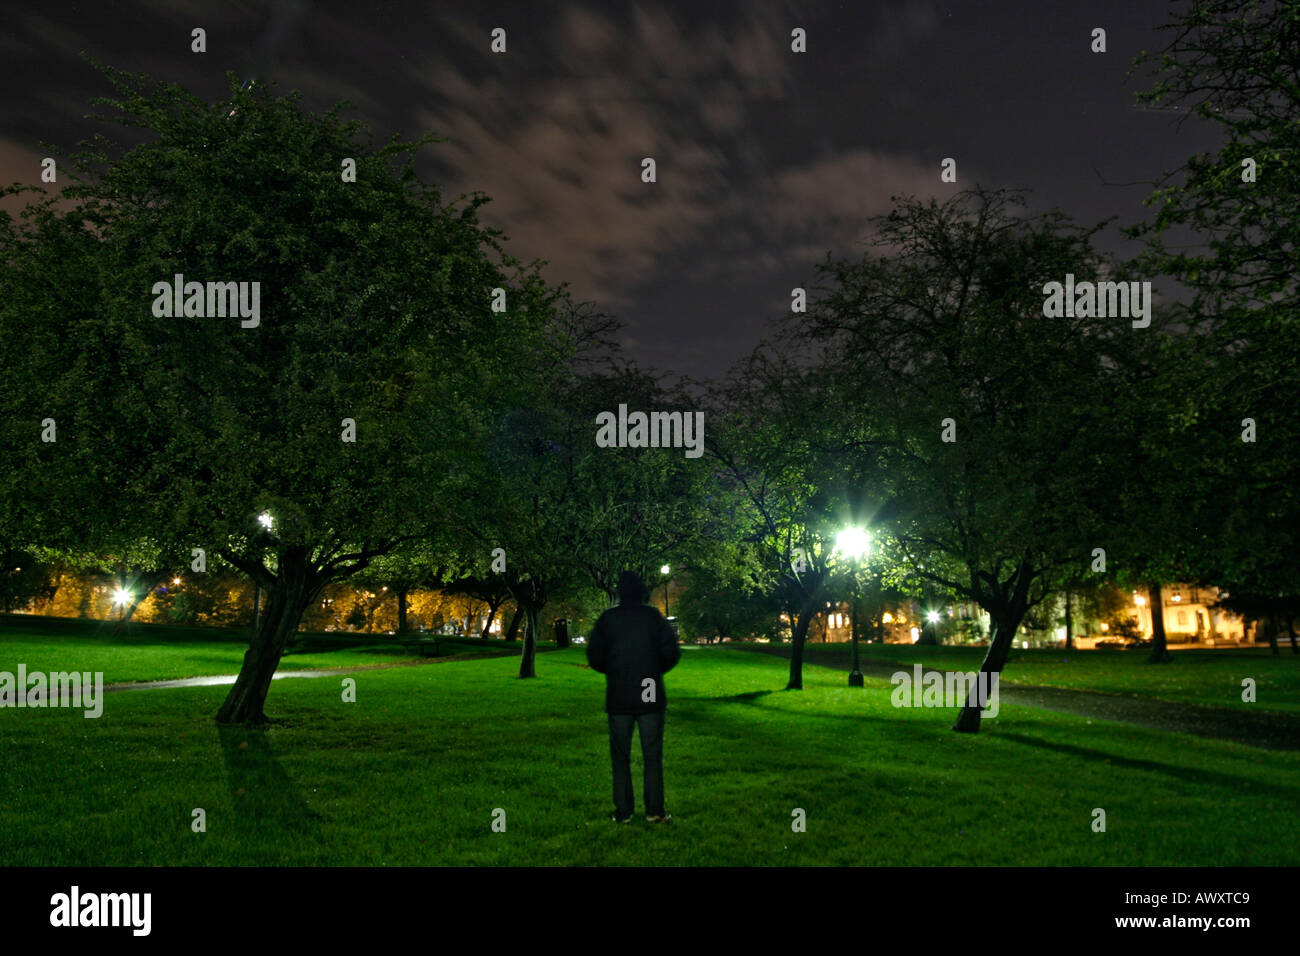 Mann stand unter einem Baum in einem Park in der Nacht in Richtung eines Pfads Straßenlampen Stockfoto